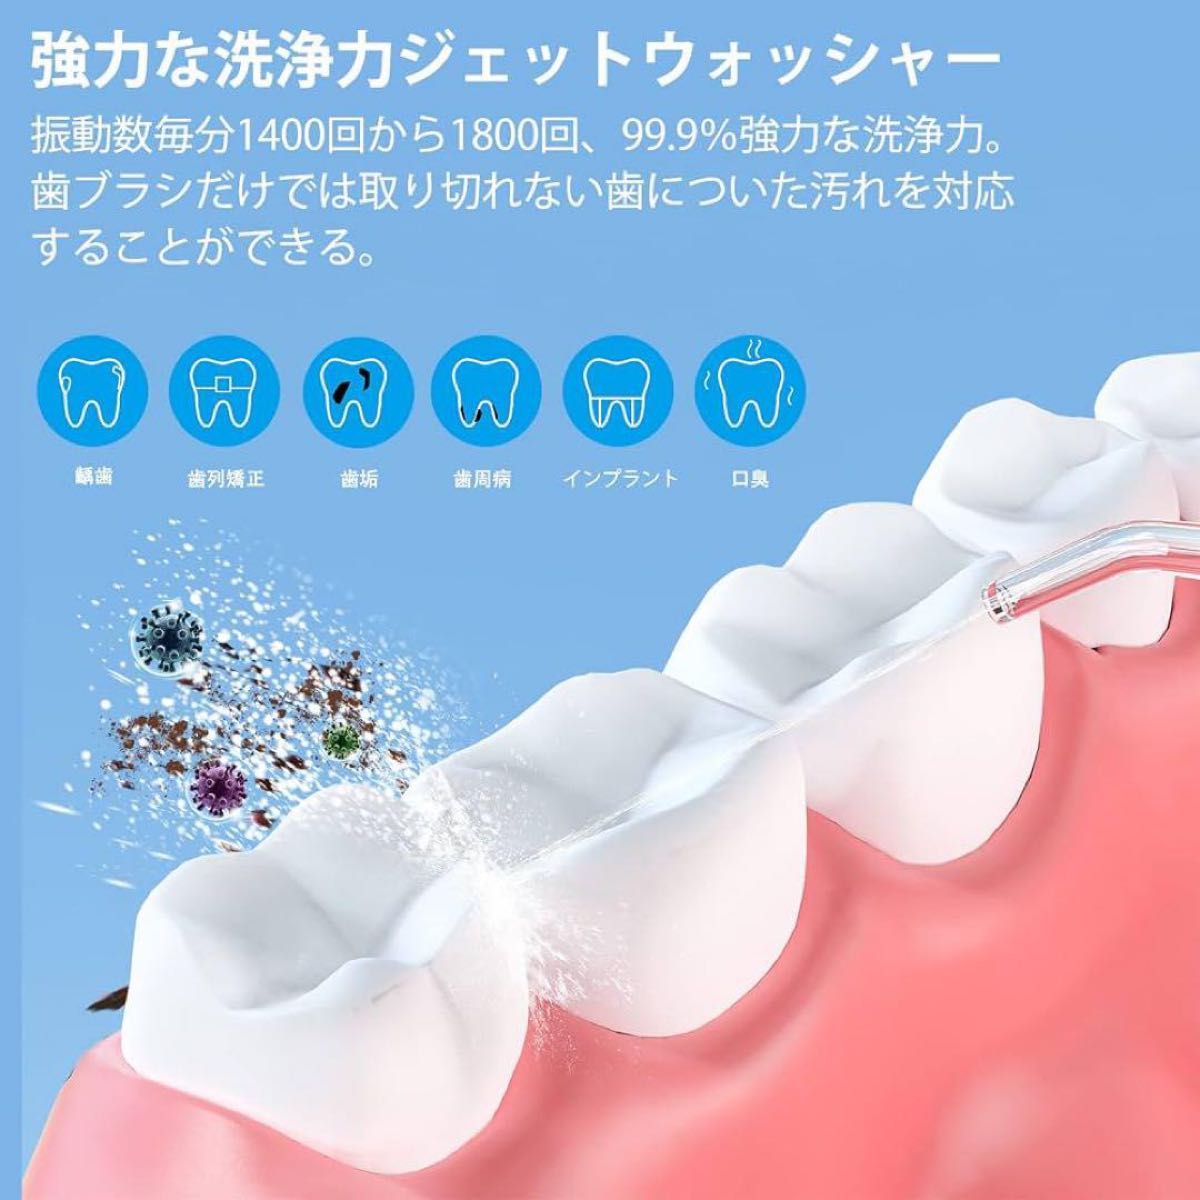 口腔洗浄器 ジェットウォッシャー 5つモード 替えノズル4種類400MLタンク 口腔洗浄器 ホワイト マウスウォッシャー 